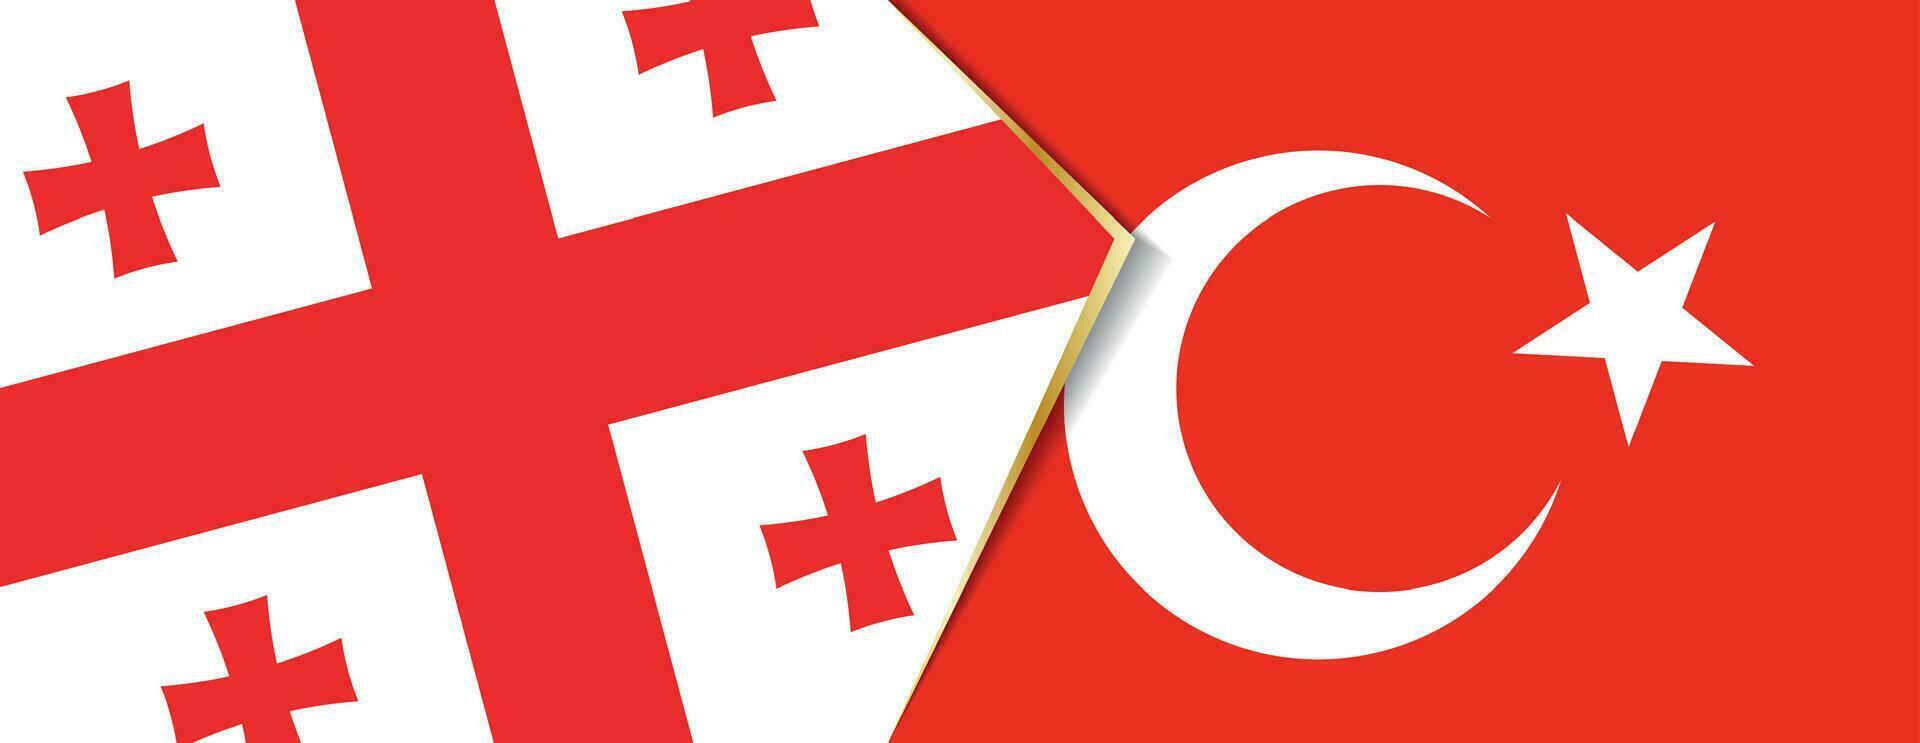 Georgia y Turquía banderas, dos vector banderas